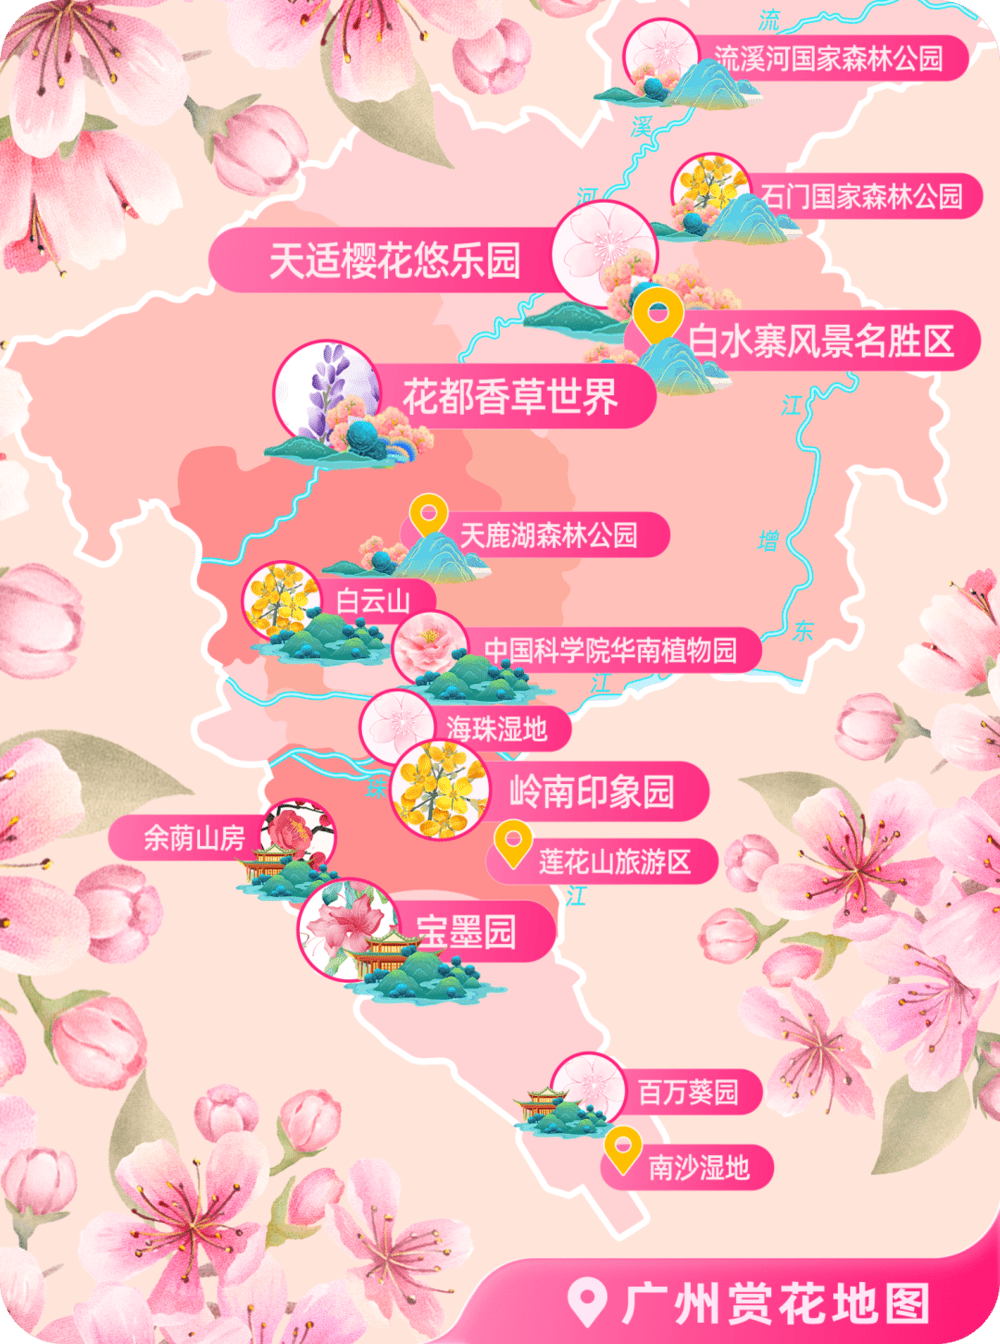 △广州赏花地图 图源：携程